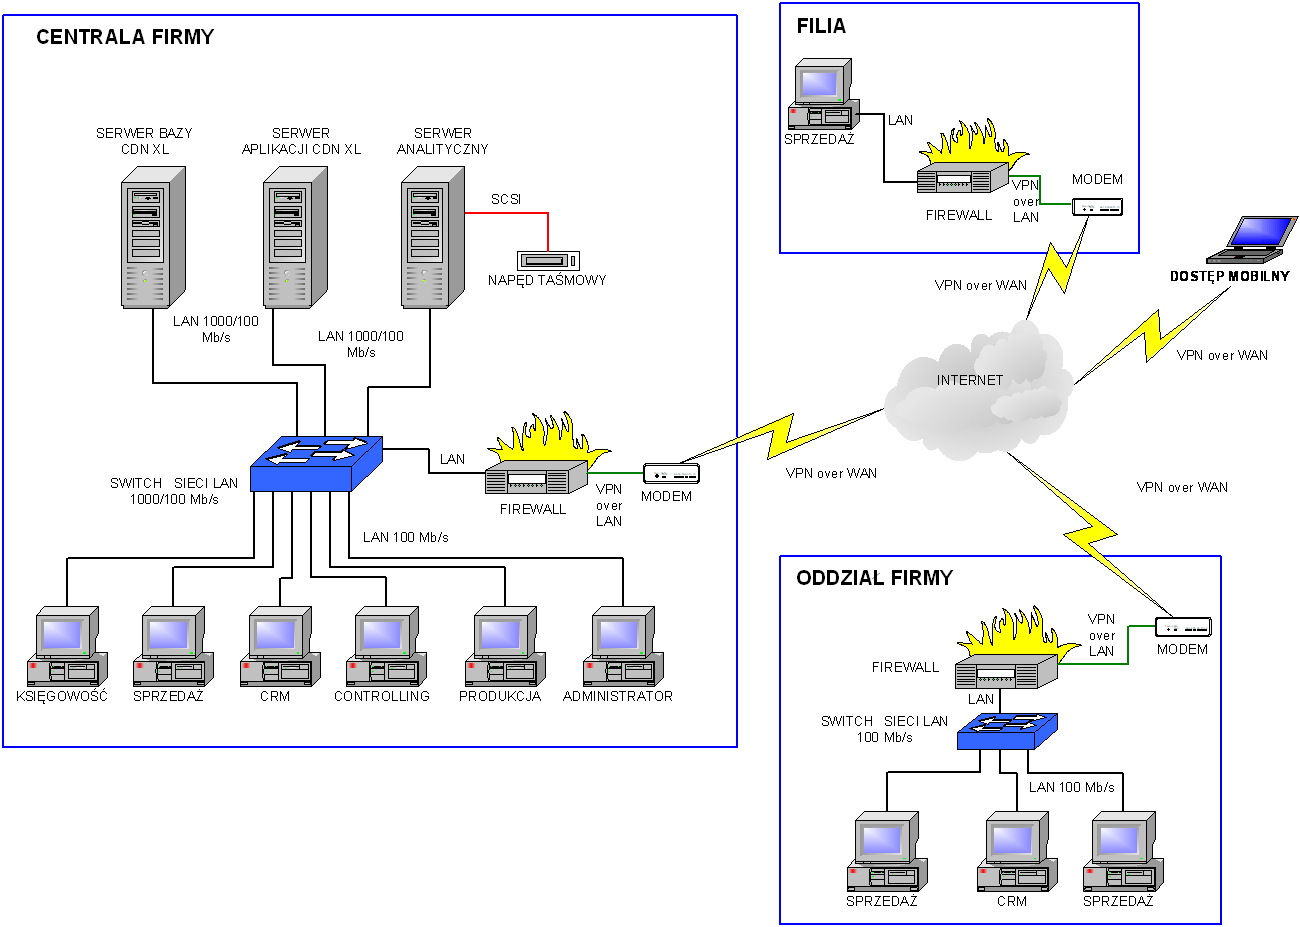 Schemat infrastruktury systemu Comarch ERP XL z uwzględnieniem rozdzielenie bazy transakcyjnej, bazy OLAP i usług terminalowych na odrębne serwery